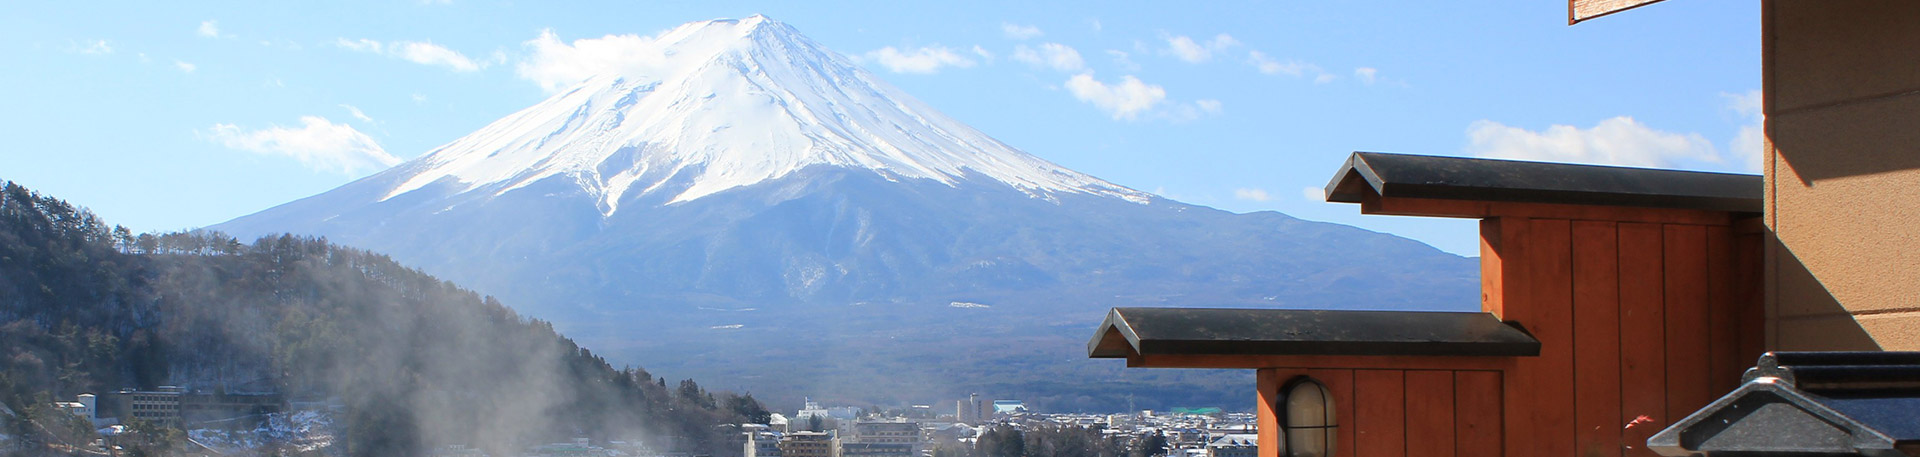 富士吟景 観光情報 メインビジュアル